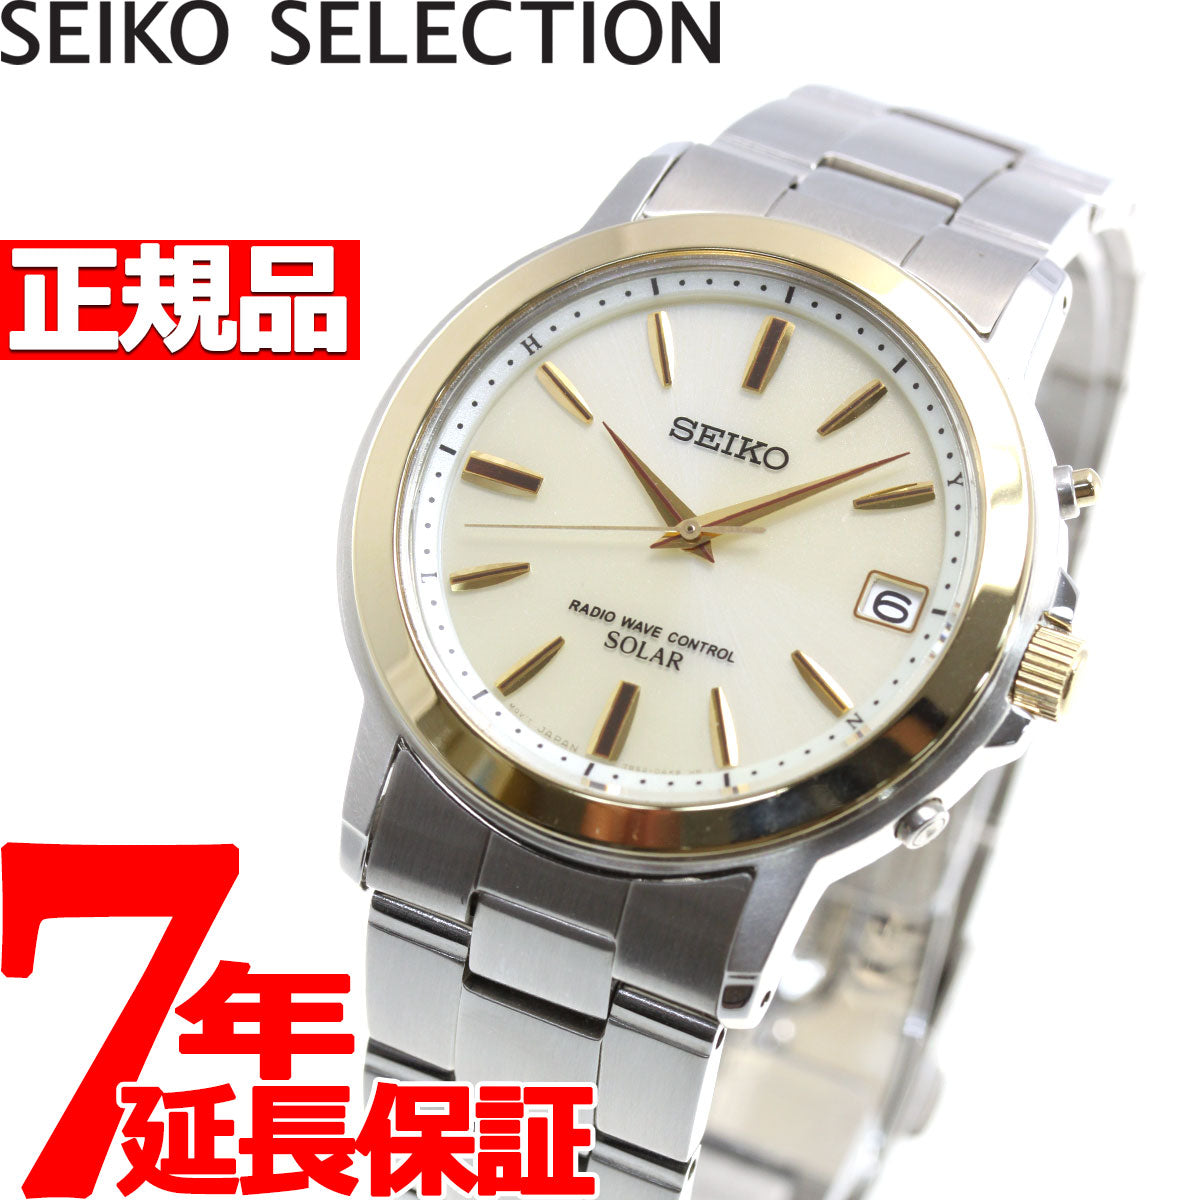 セイコー セレクション SEIKO SELECTION 電波 ソーラー 電波時計 腕時計 メンズ ペアウォッチ SBTM170